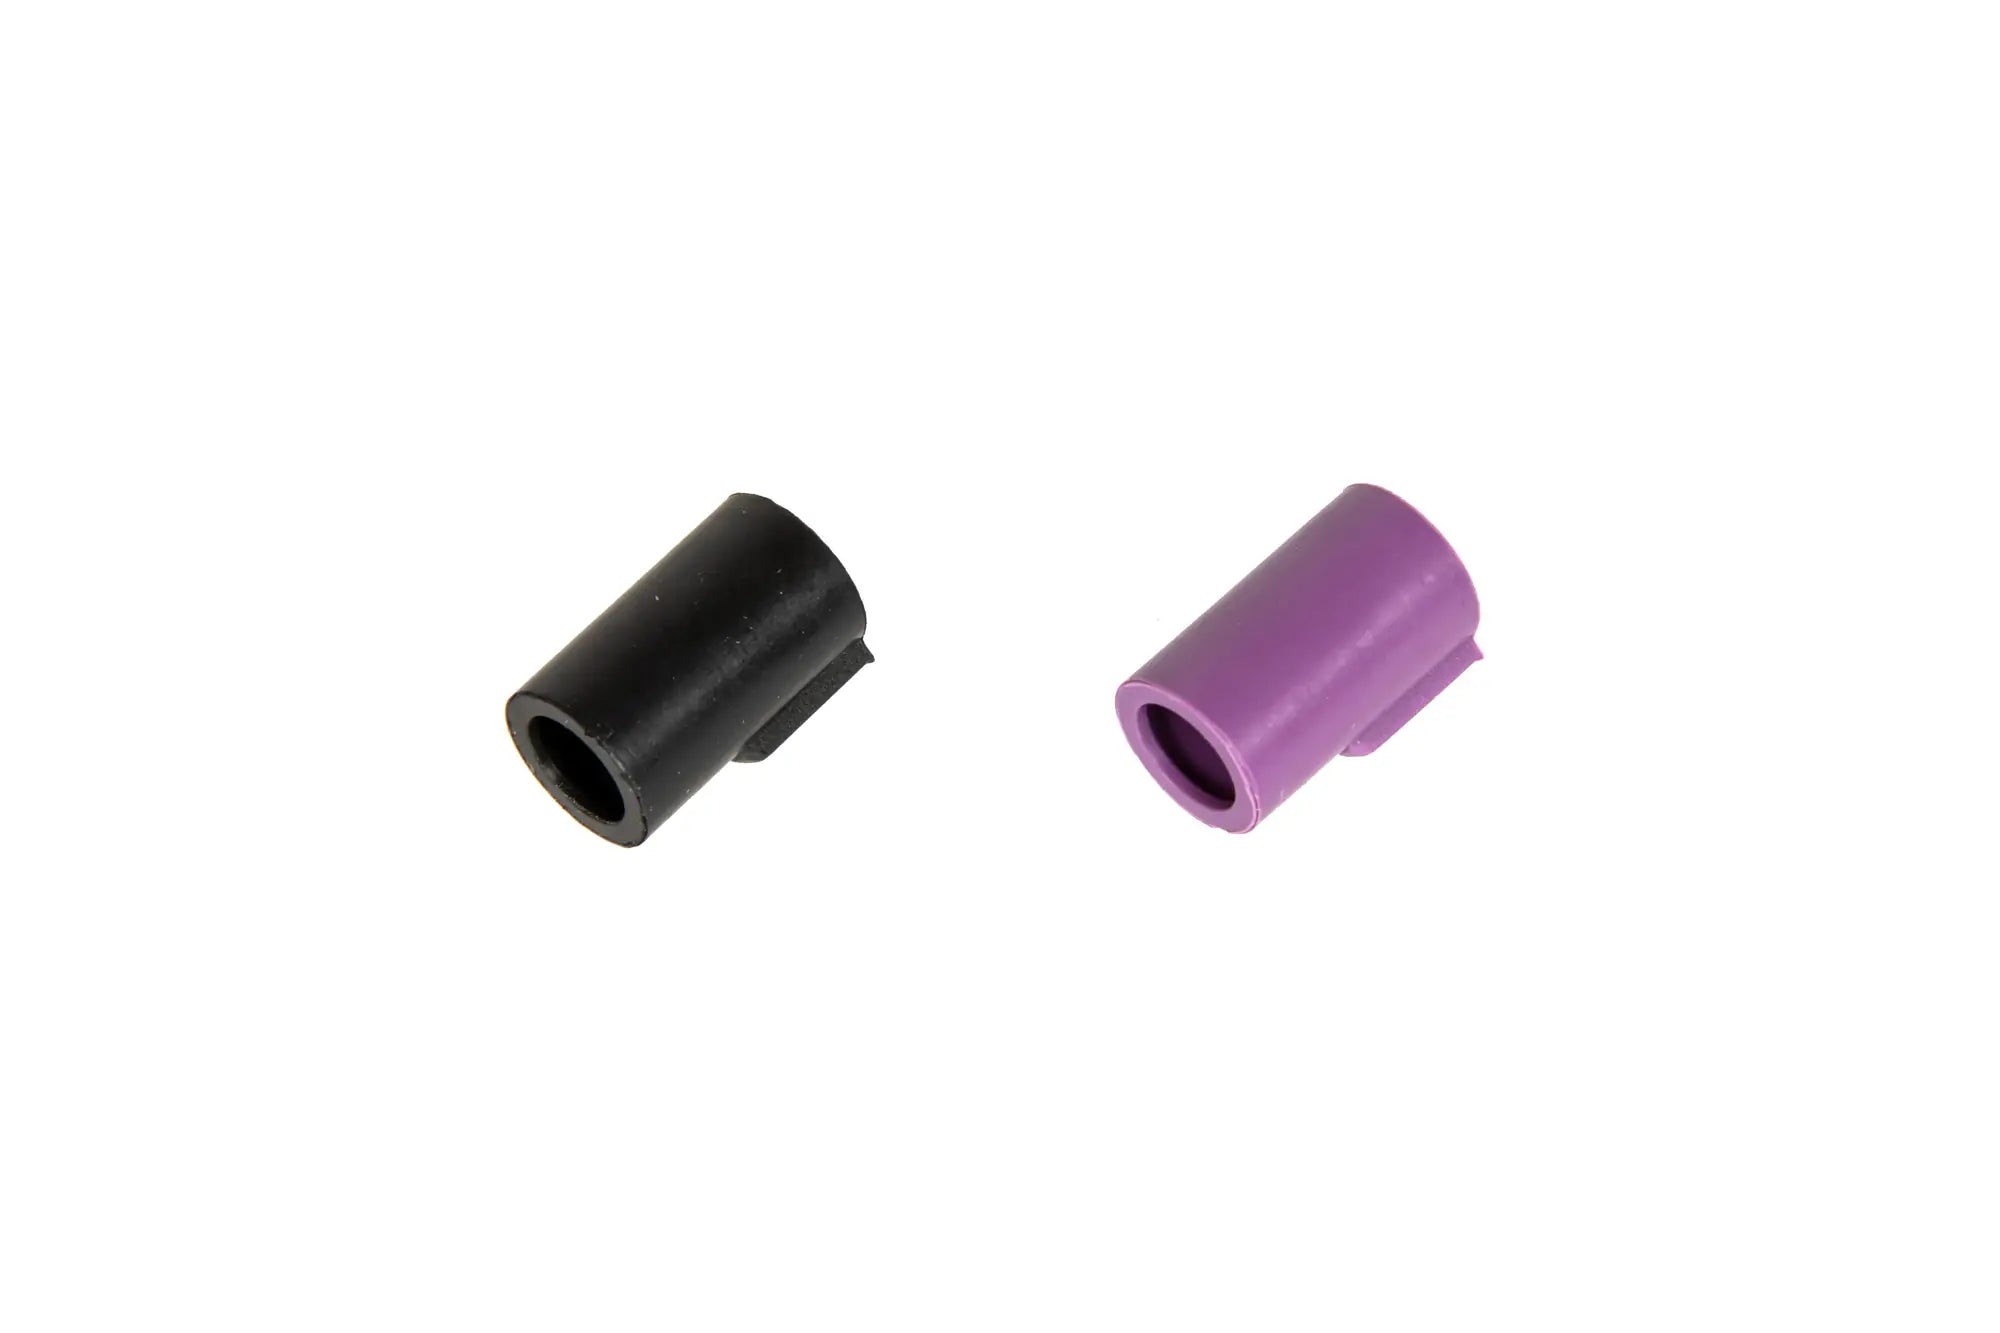 Set of 2 MEC Hop Up Rubber  - Black + Purple (GBB)